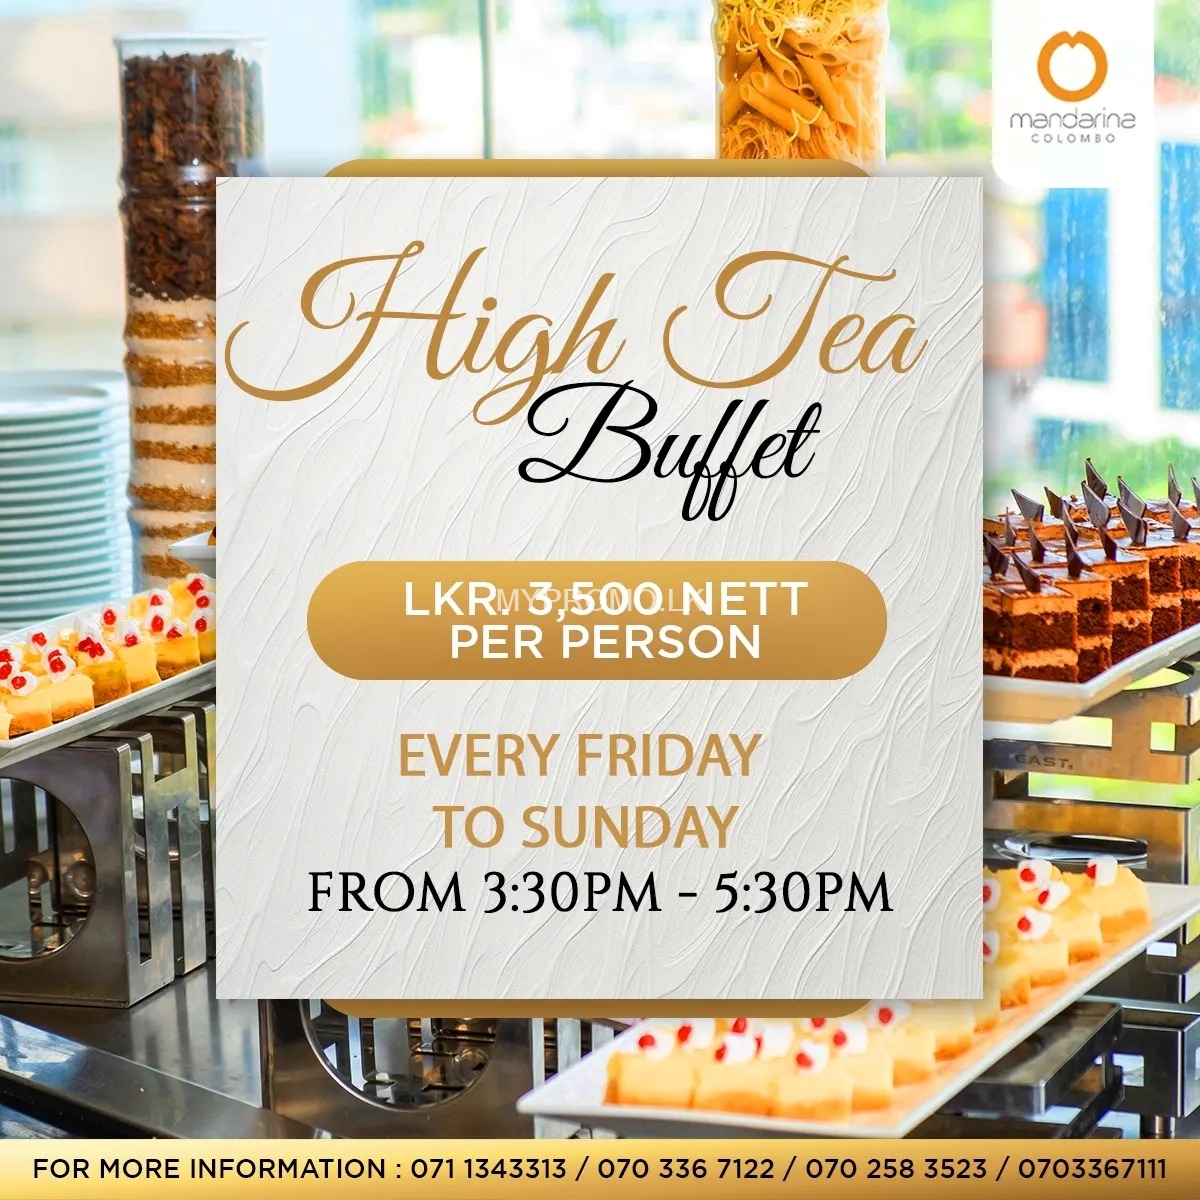 High Tea Buffet at Mandarina Colombo